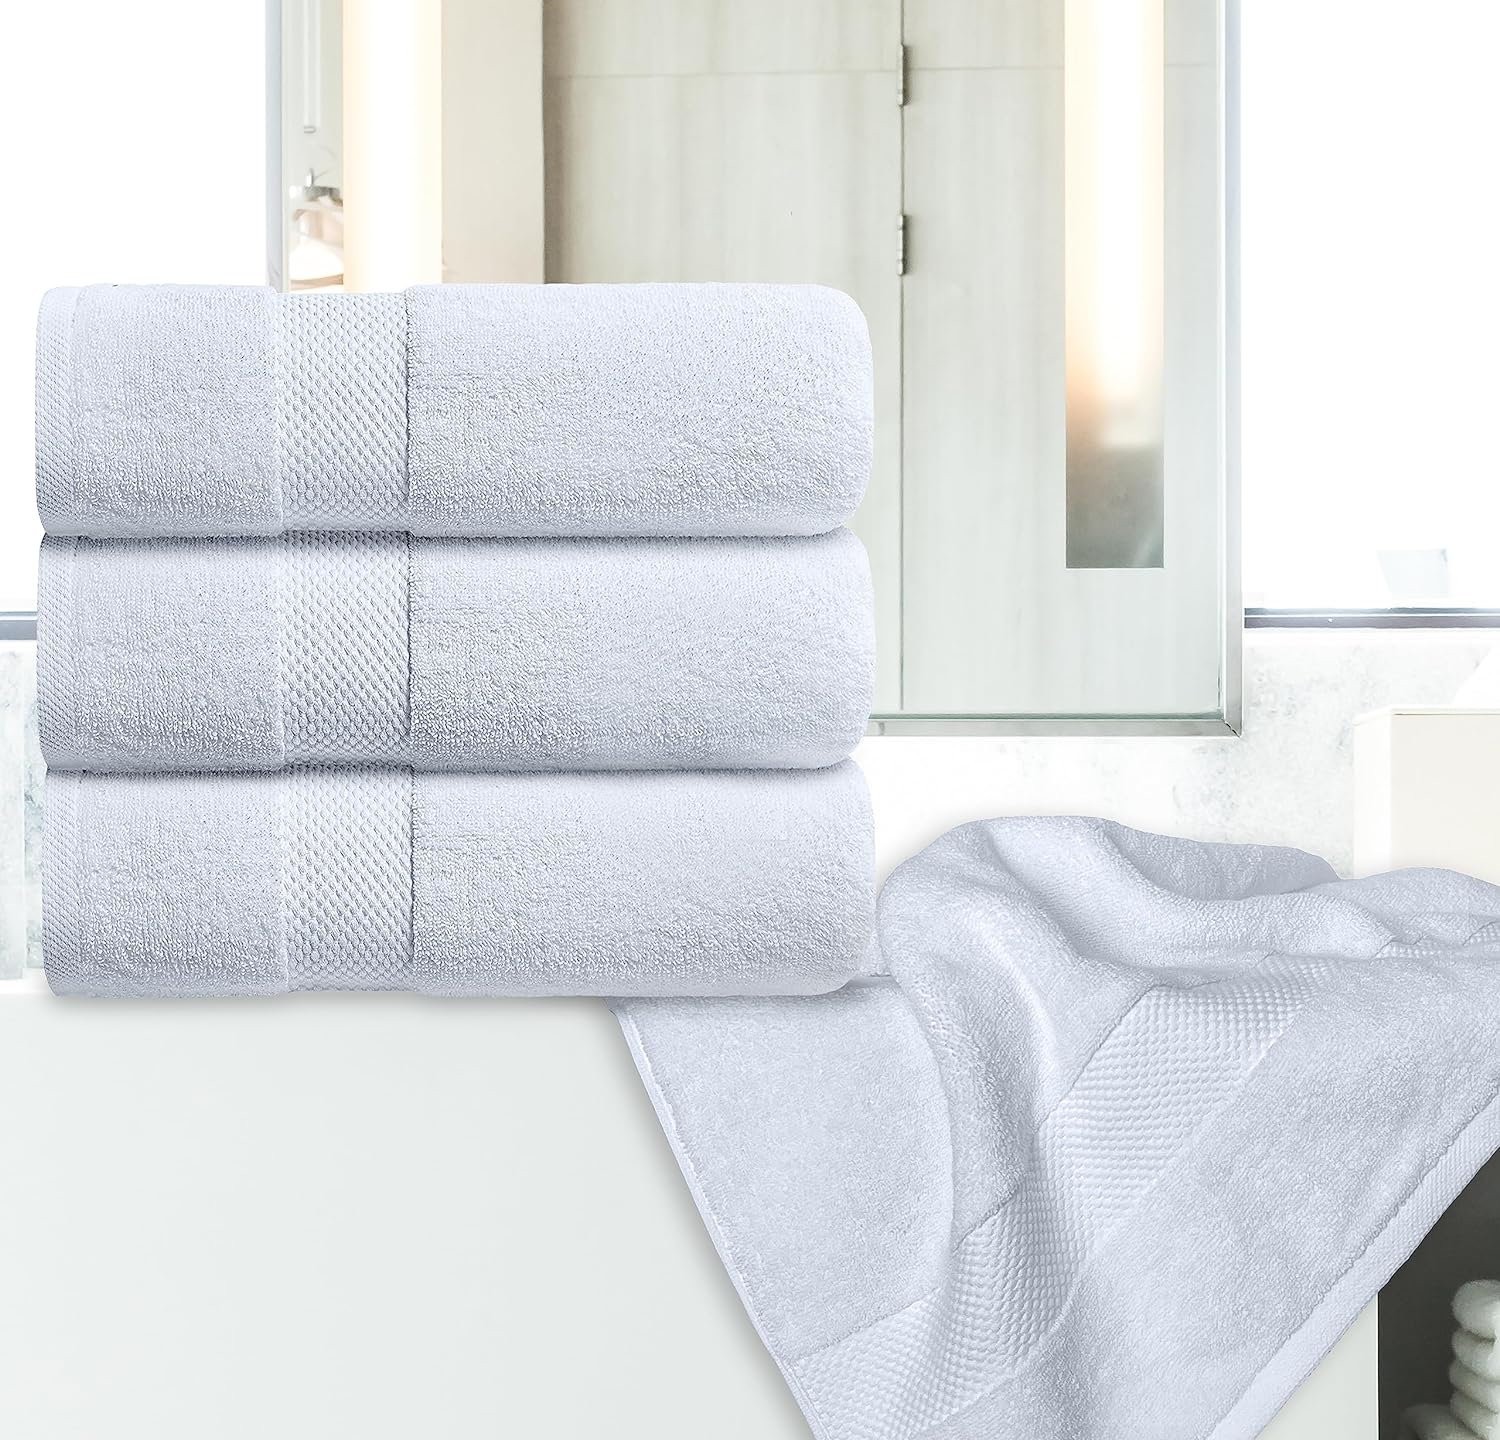 SUTERA - Juego de 4 toallas de lavado extra absorbentes de hilo plateado -  Paquete de 4 toallas blancas - 100% algodón cultivado en CA - Tela de lujo